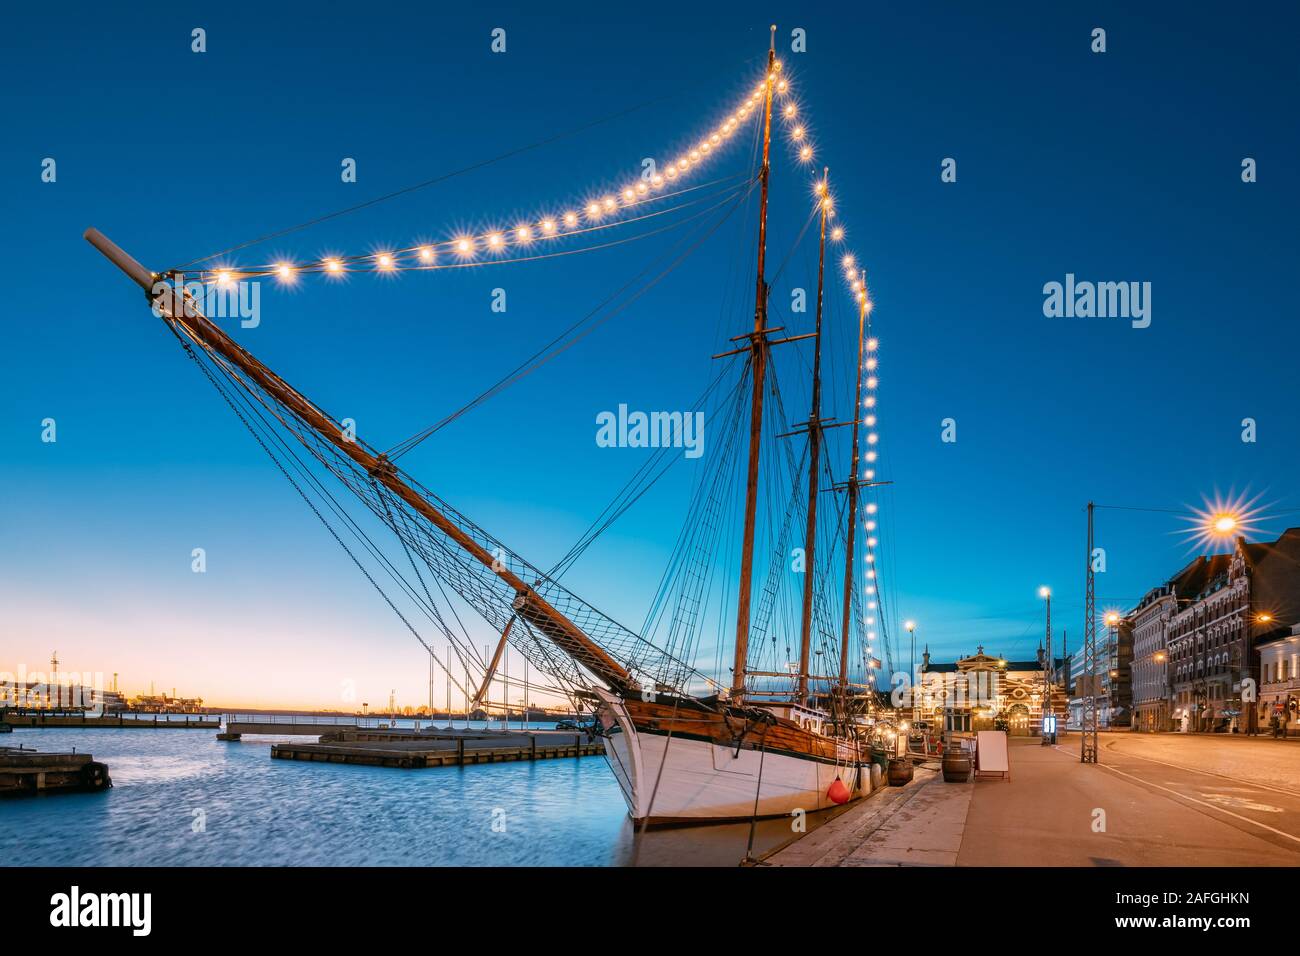 Helsinki, Finnland. Alte hölzerne Segelboot Schiff Schoner ist mit der Stadt Pier, Steg vertäut. Ungewöhnliche Cafe Restaurant im Stadtzentrum in Beleuchtung in Ev Stockfoto